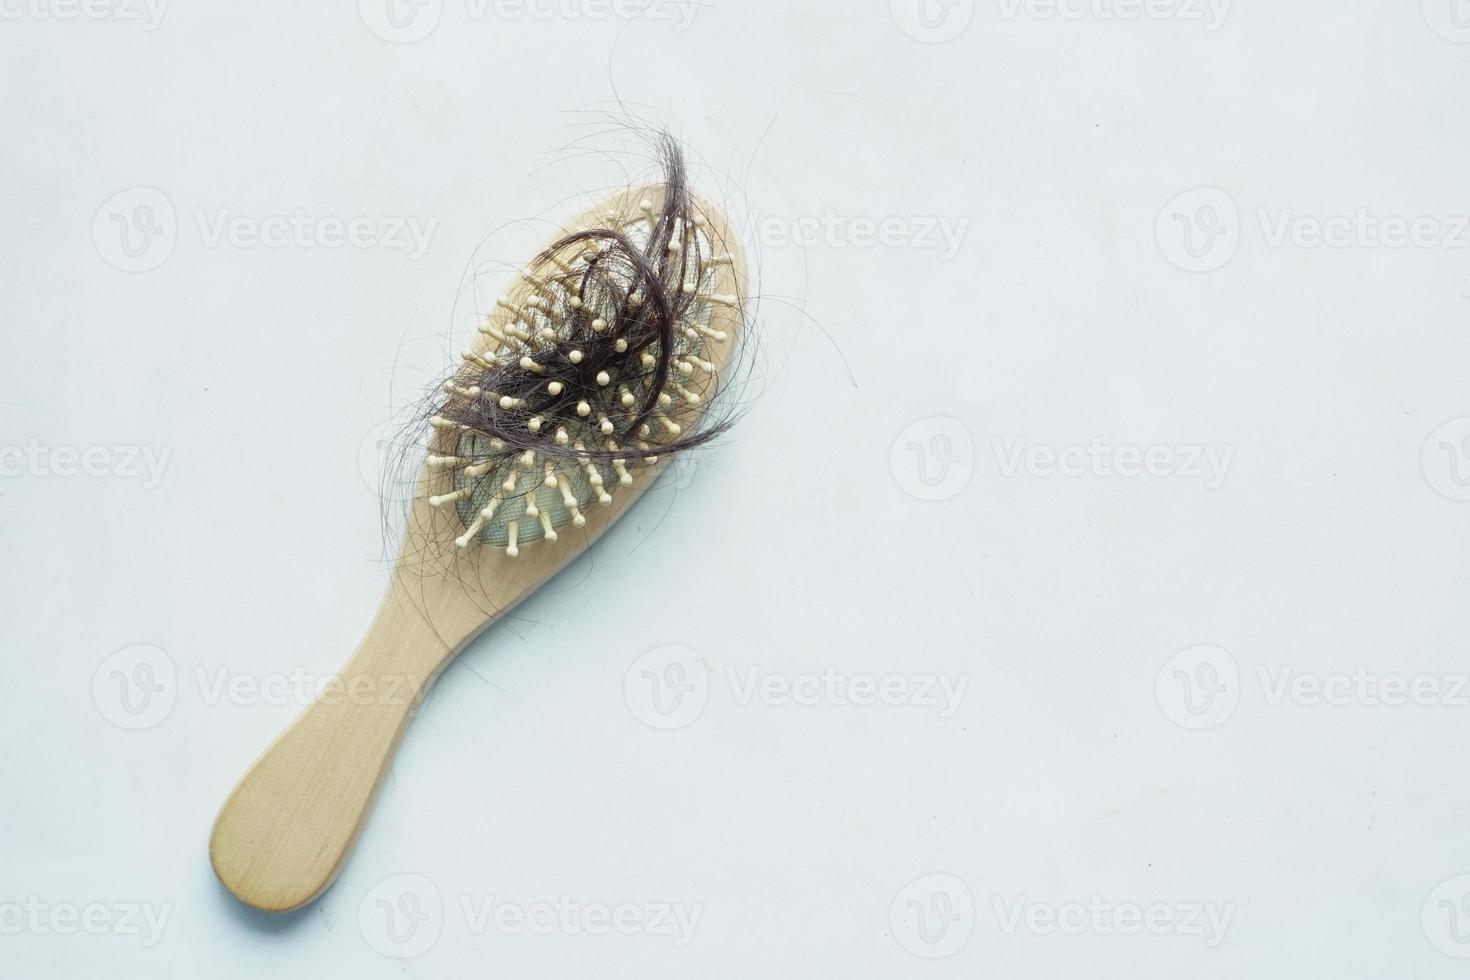 una spazzola con i capelli persi sul tavolo foto